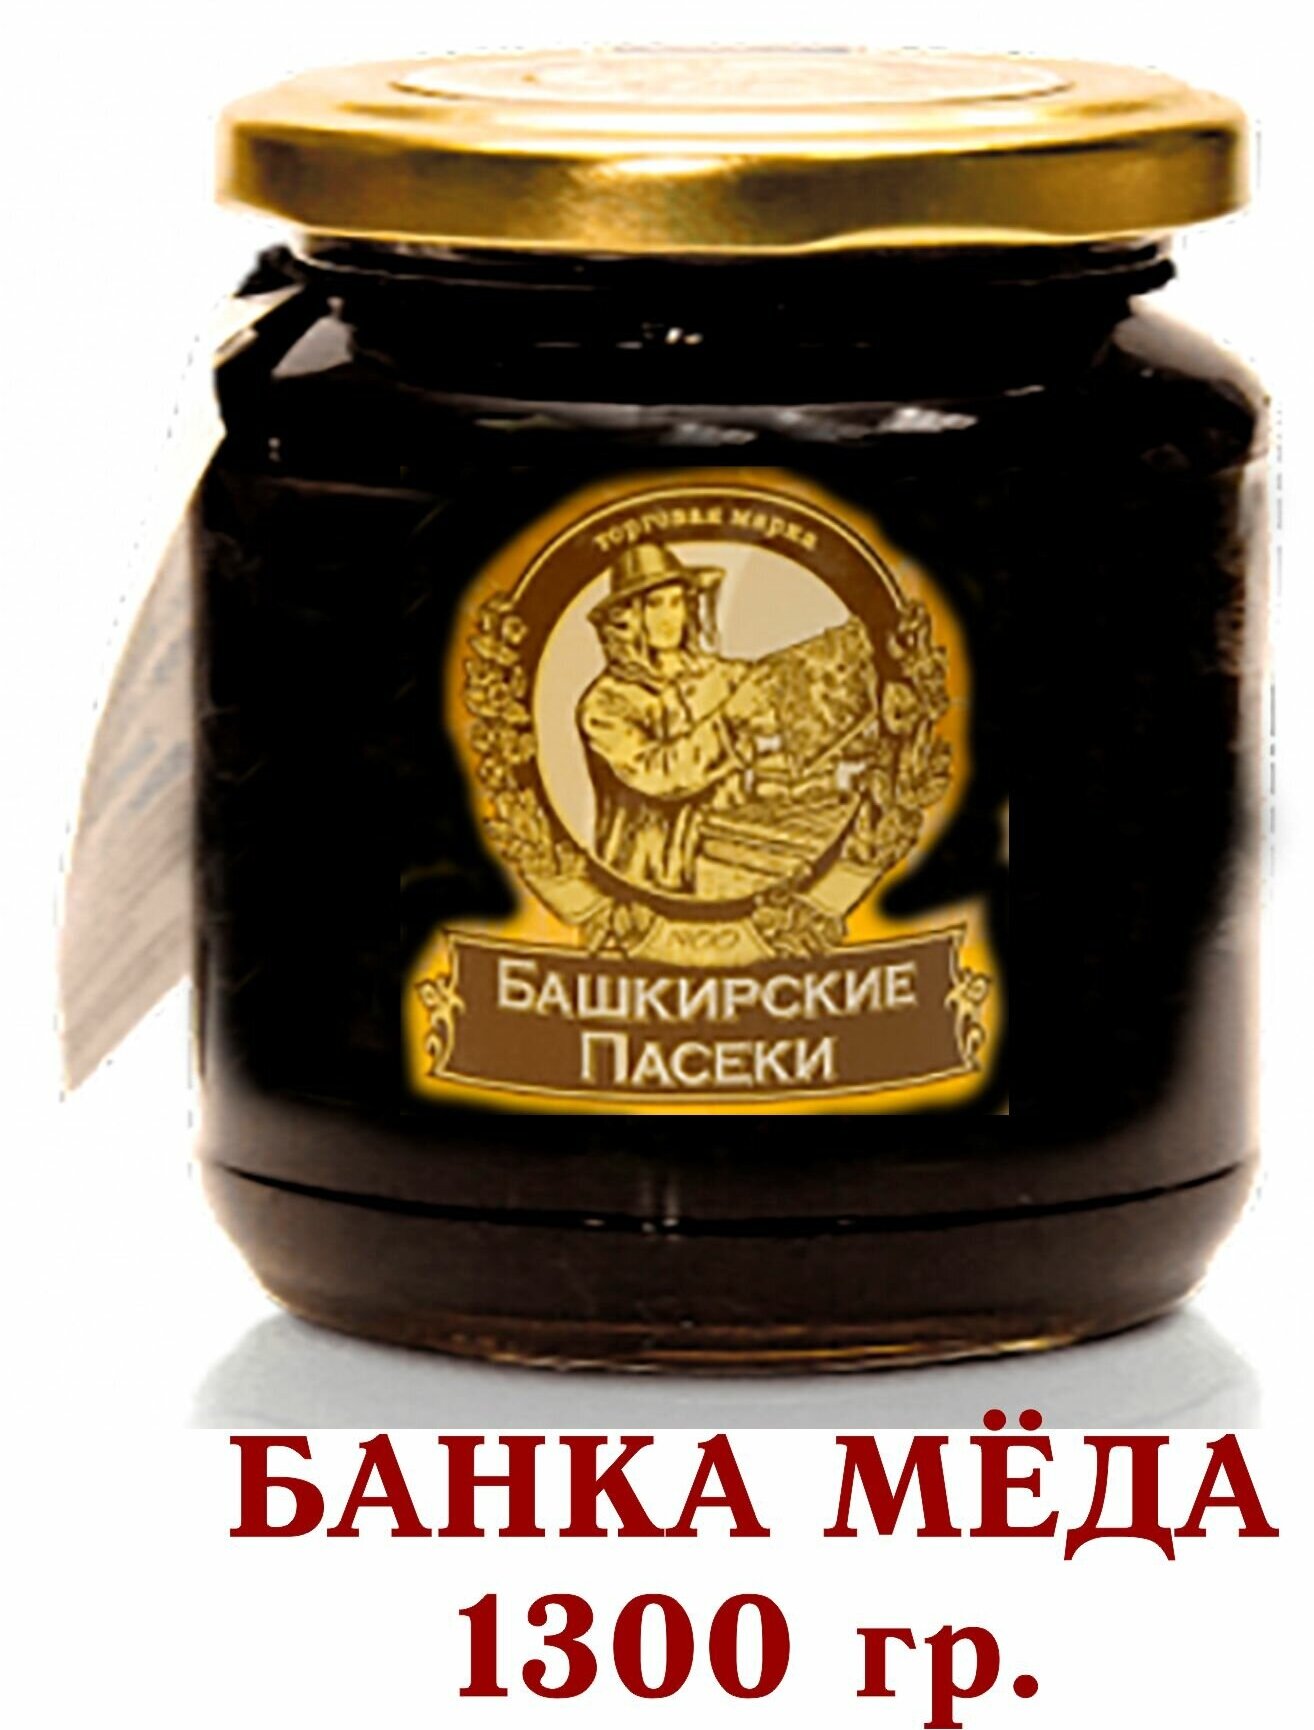 МЁД Башкирский гречишный Башкирские пасеки+ - 1300 грамм